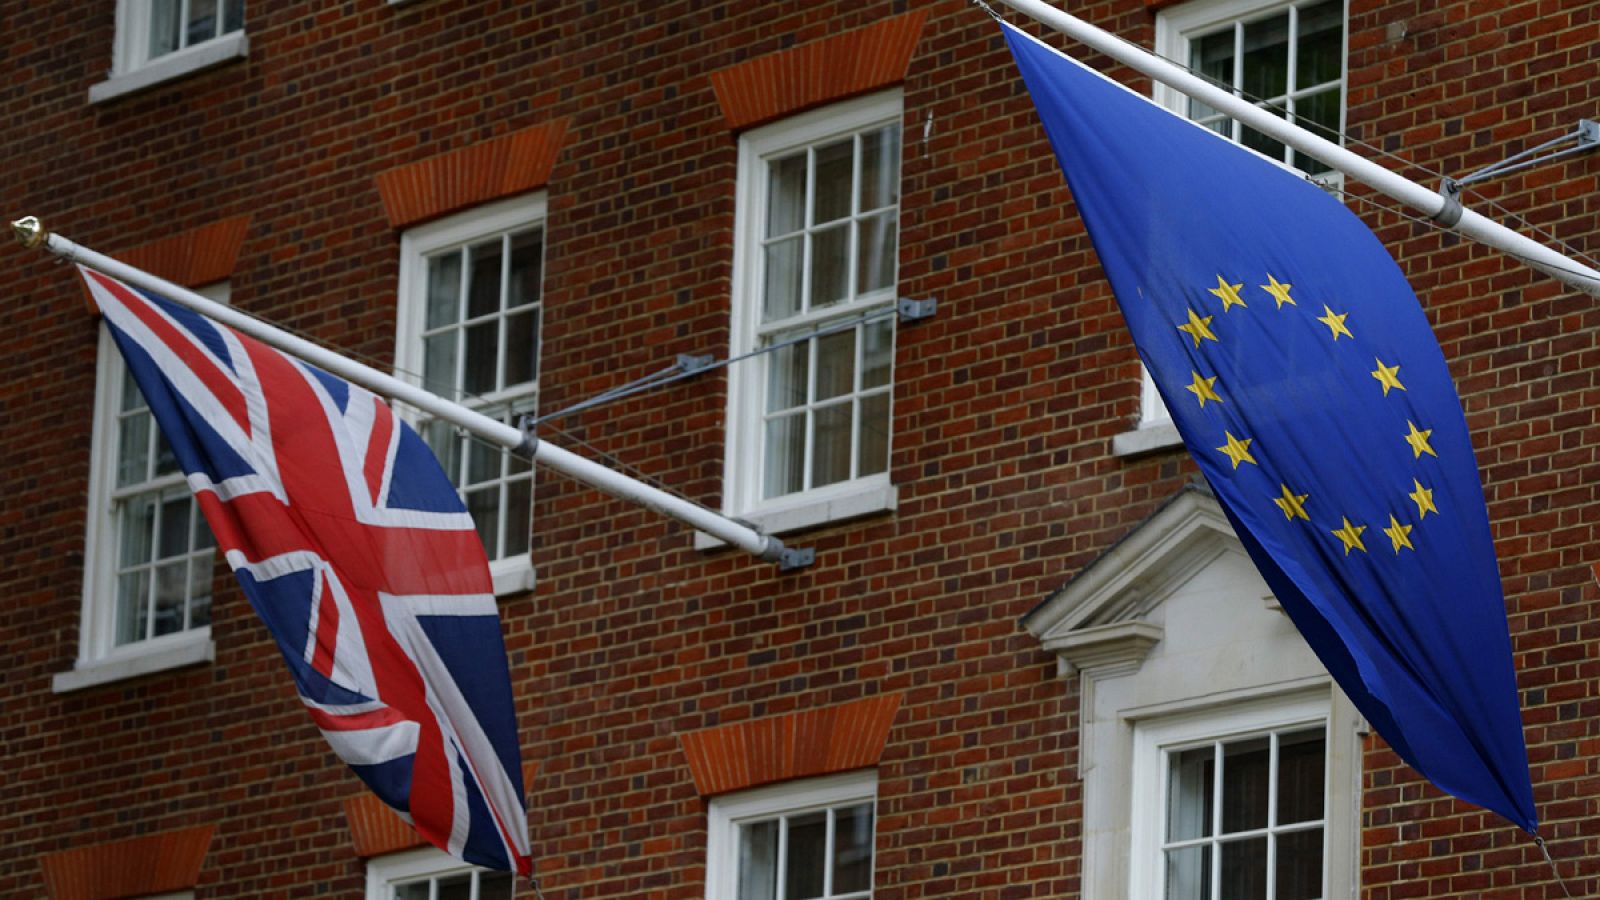 Las banderas del Reino Unido y de la Unión Europea ondean en la Casa de Europa